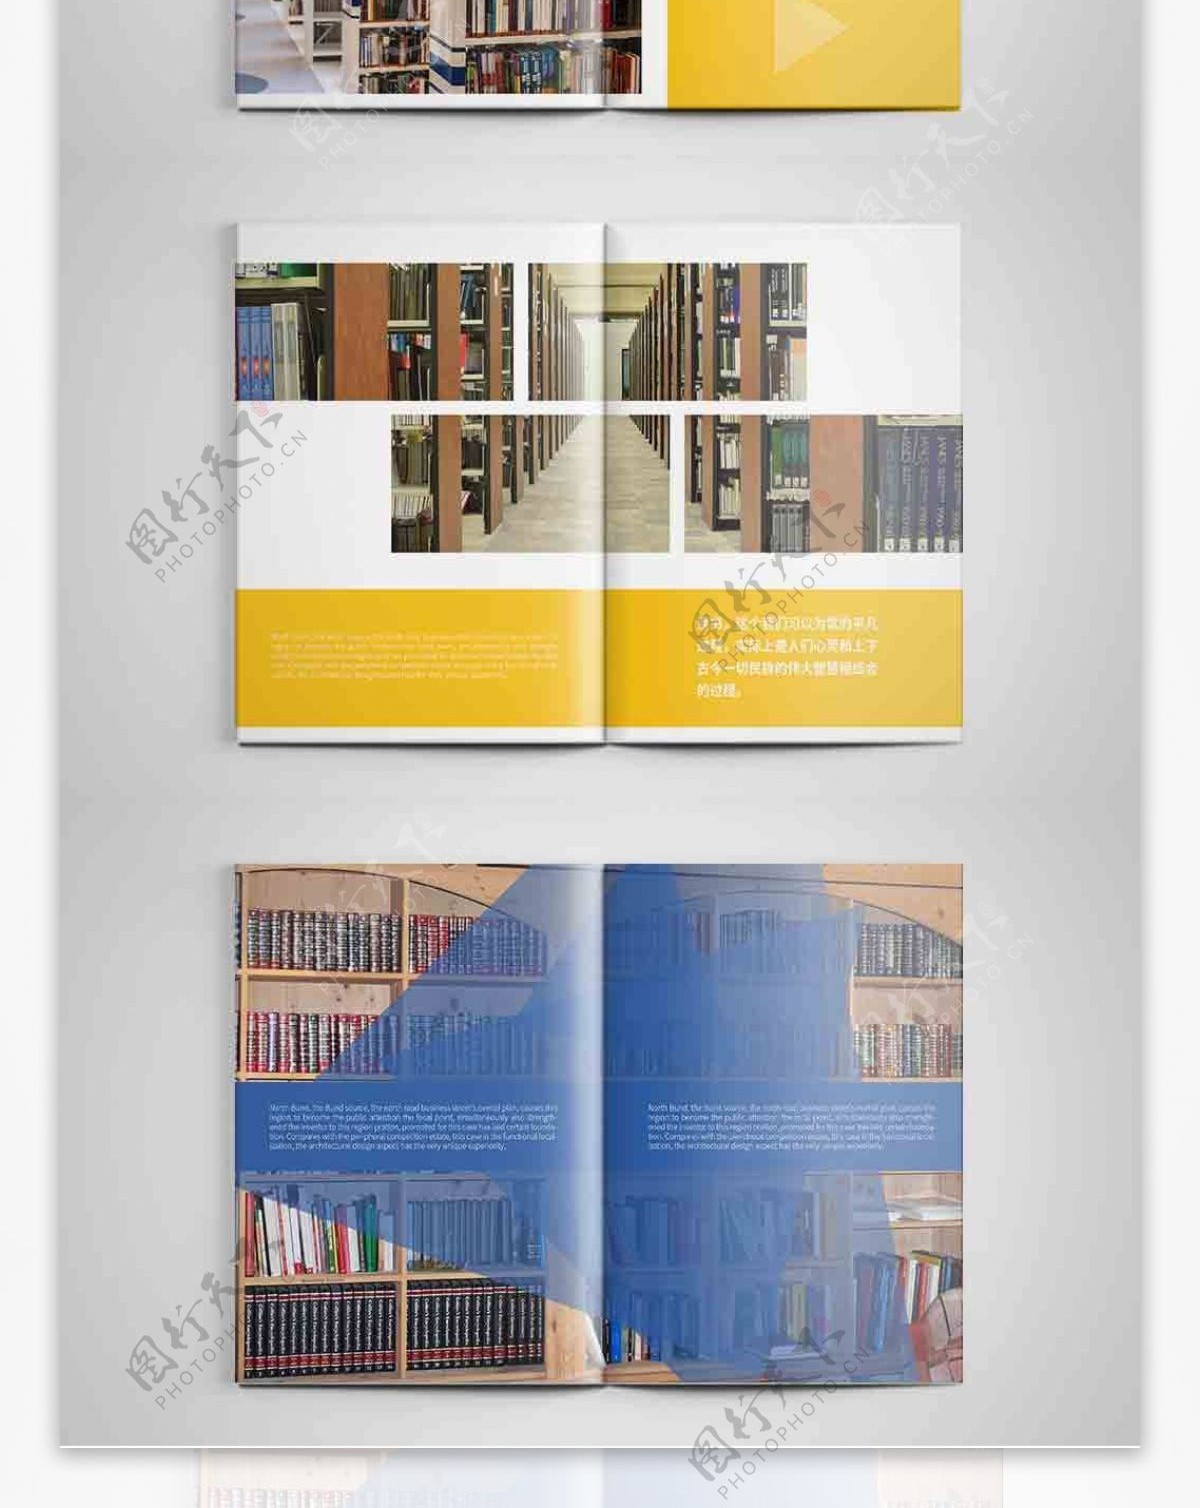 创意图书馆宣传画册设计PSD模板